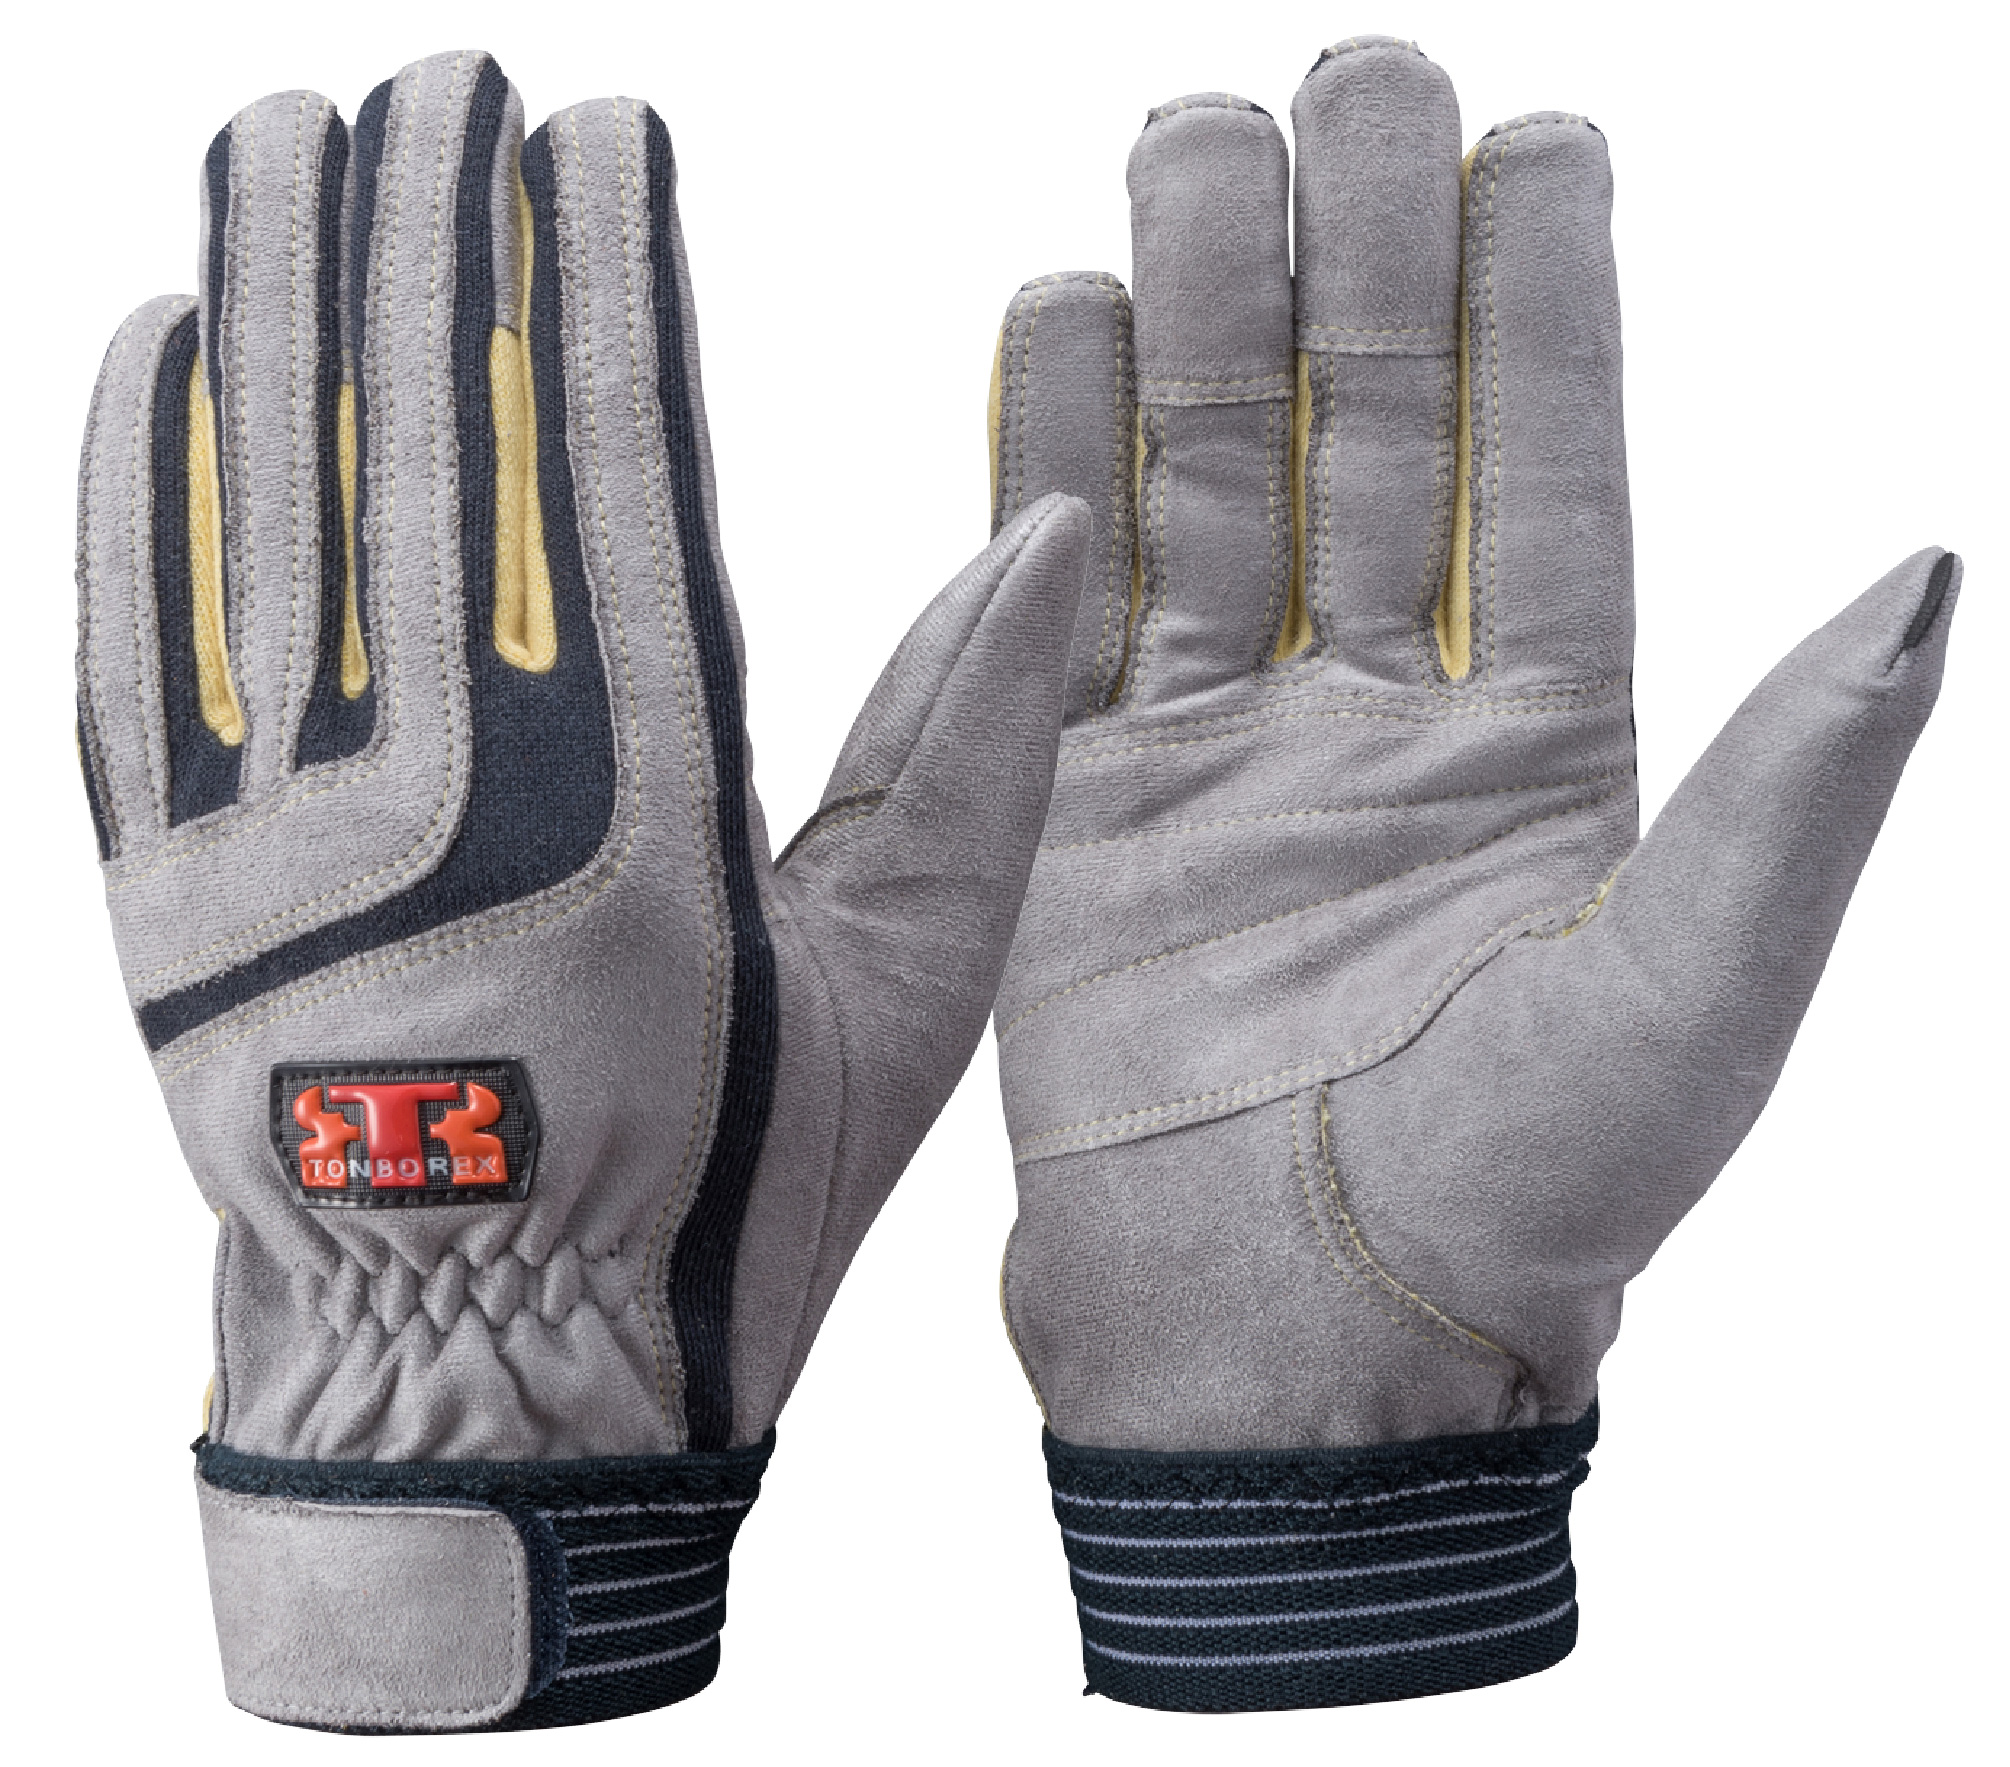 ケブラー®繊維製手袋(耐切創）シリーズ 一覧 | 官公庁向けグローブ専門